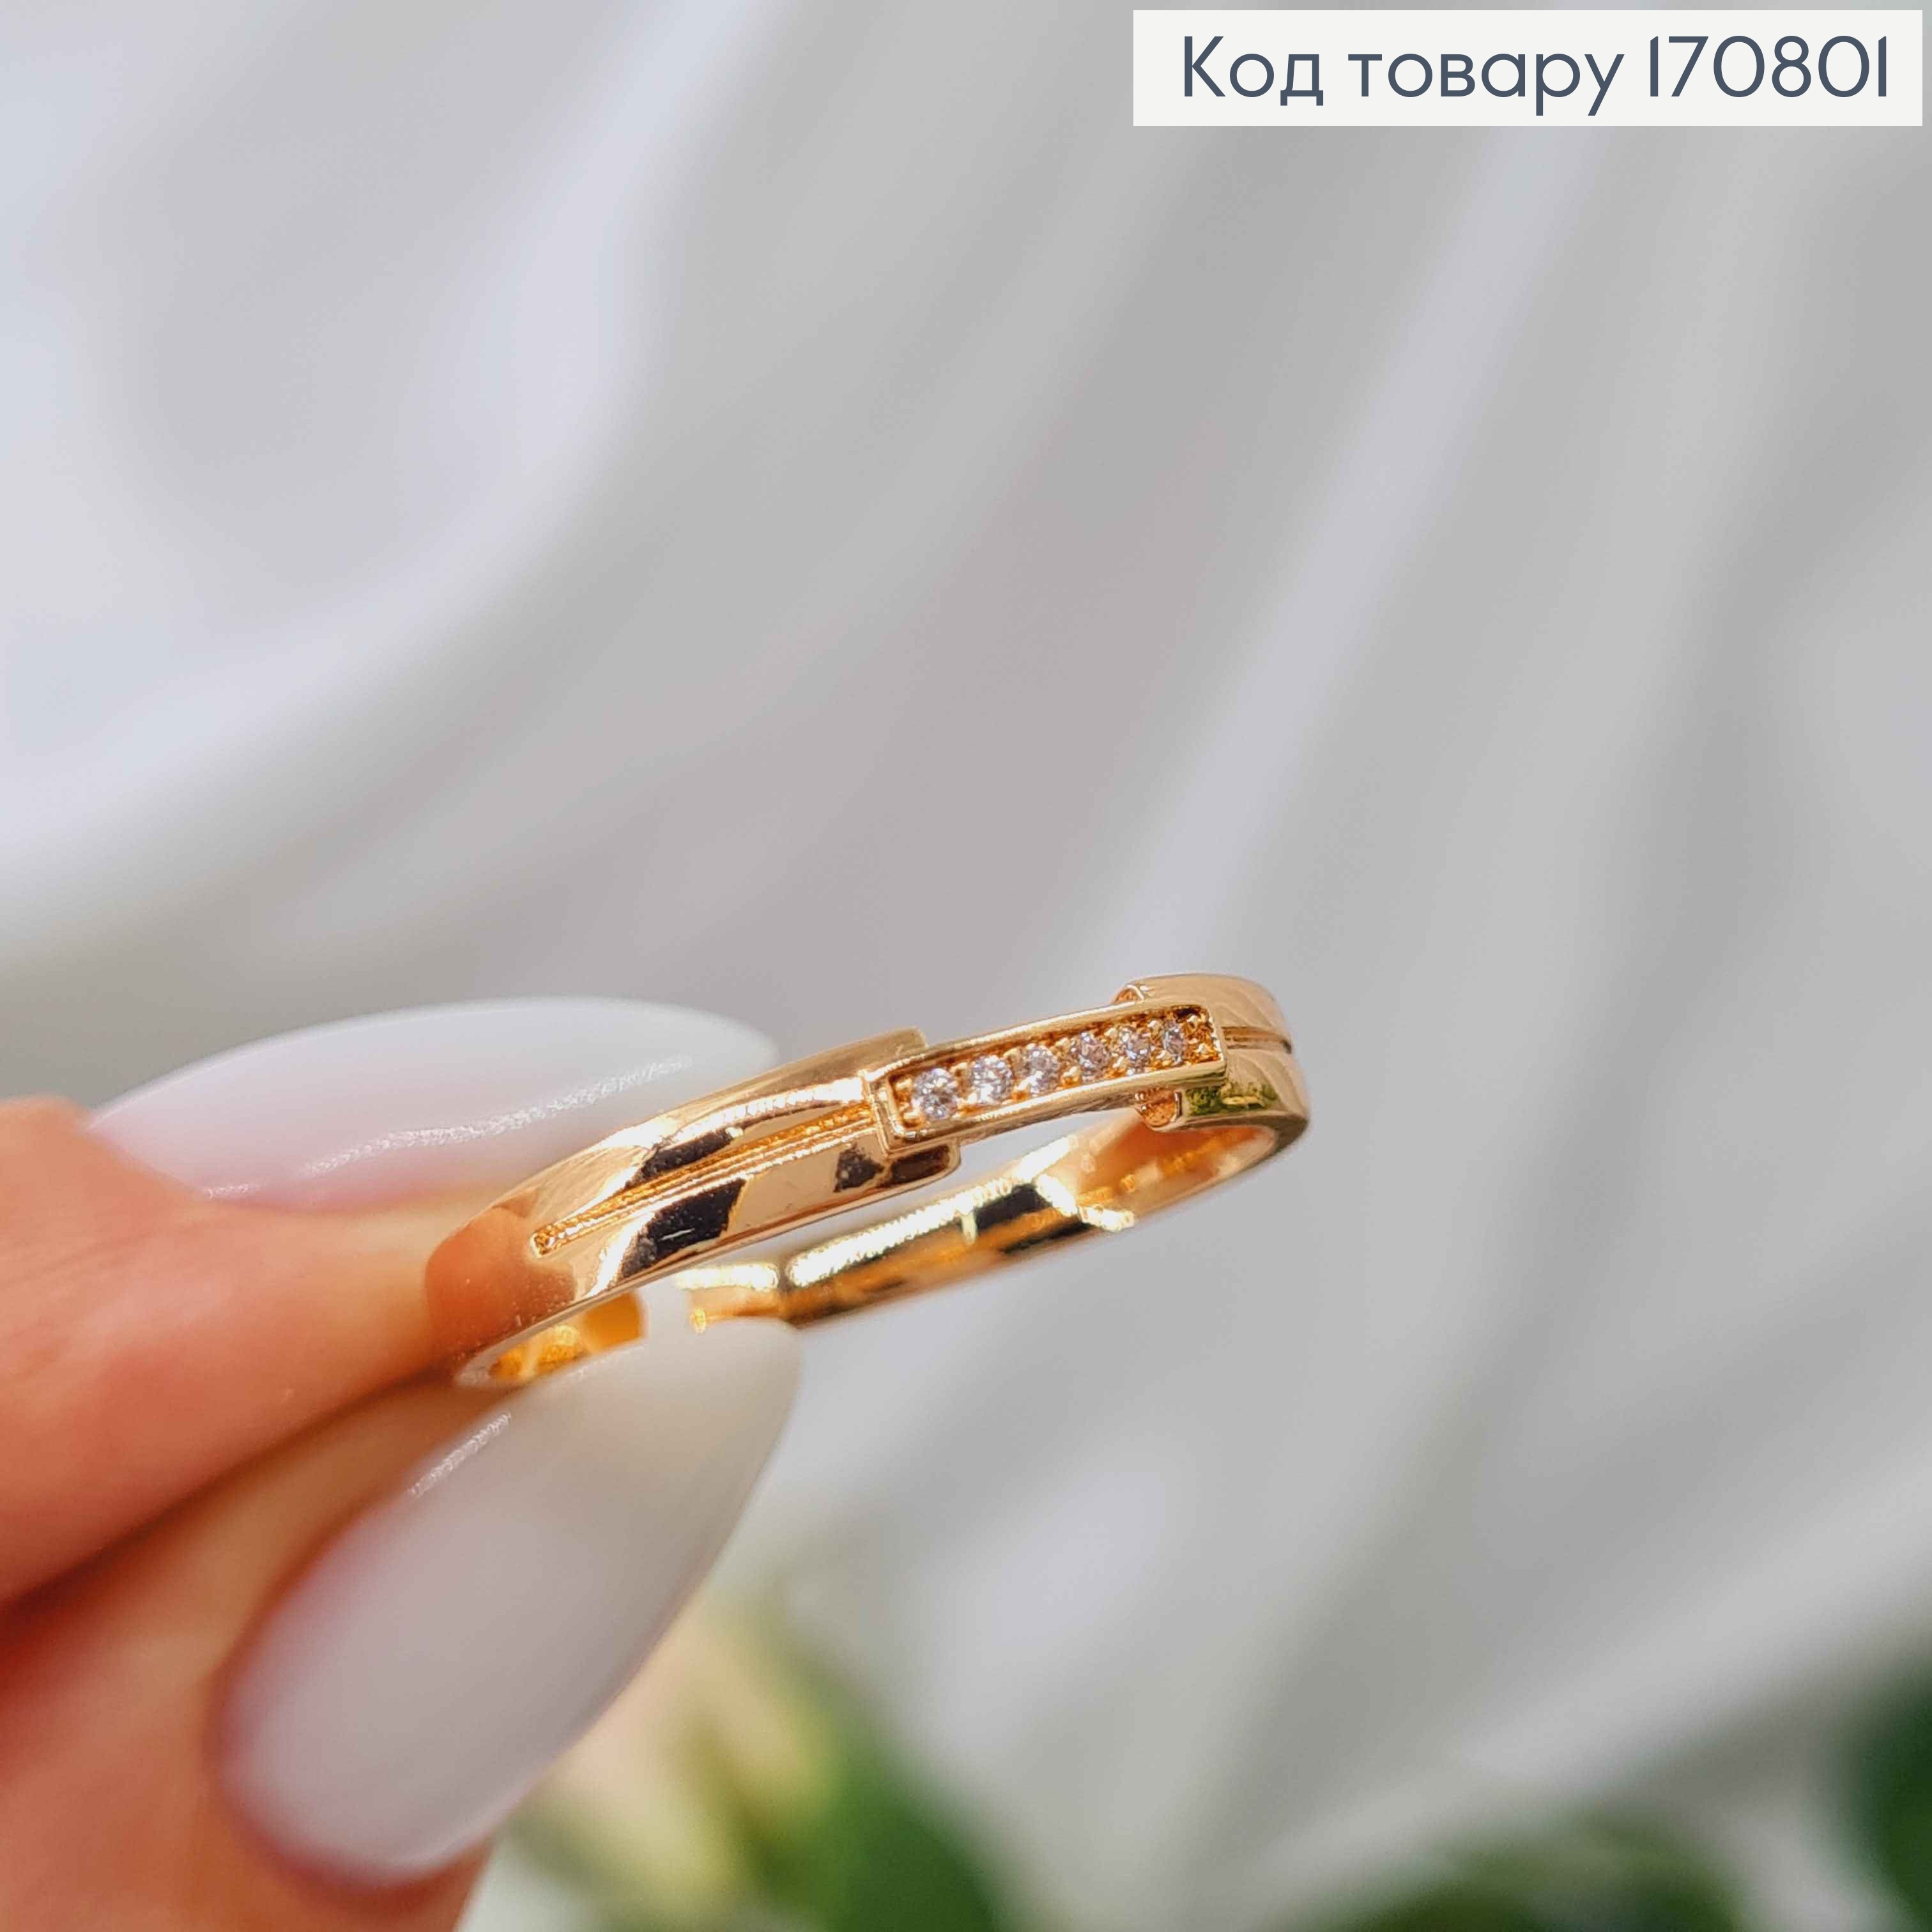 Кольцо "Флоу" с линией камней, Xuping 18K 170801 фото 3